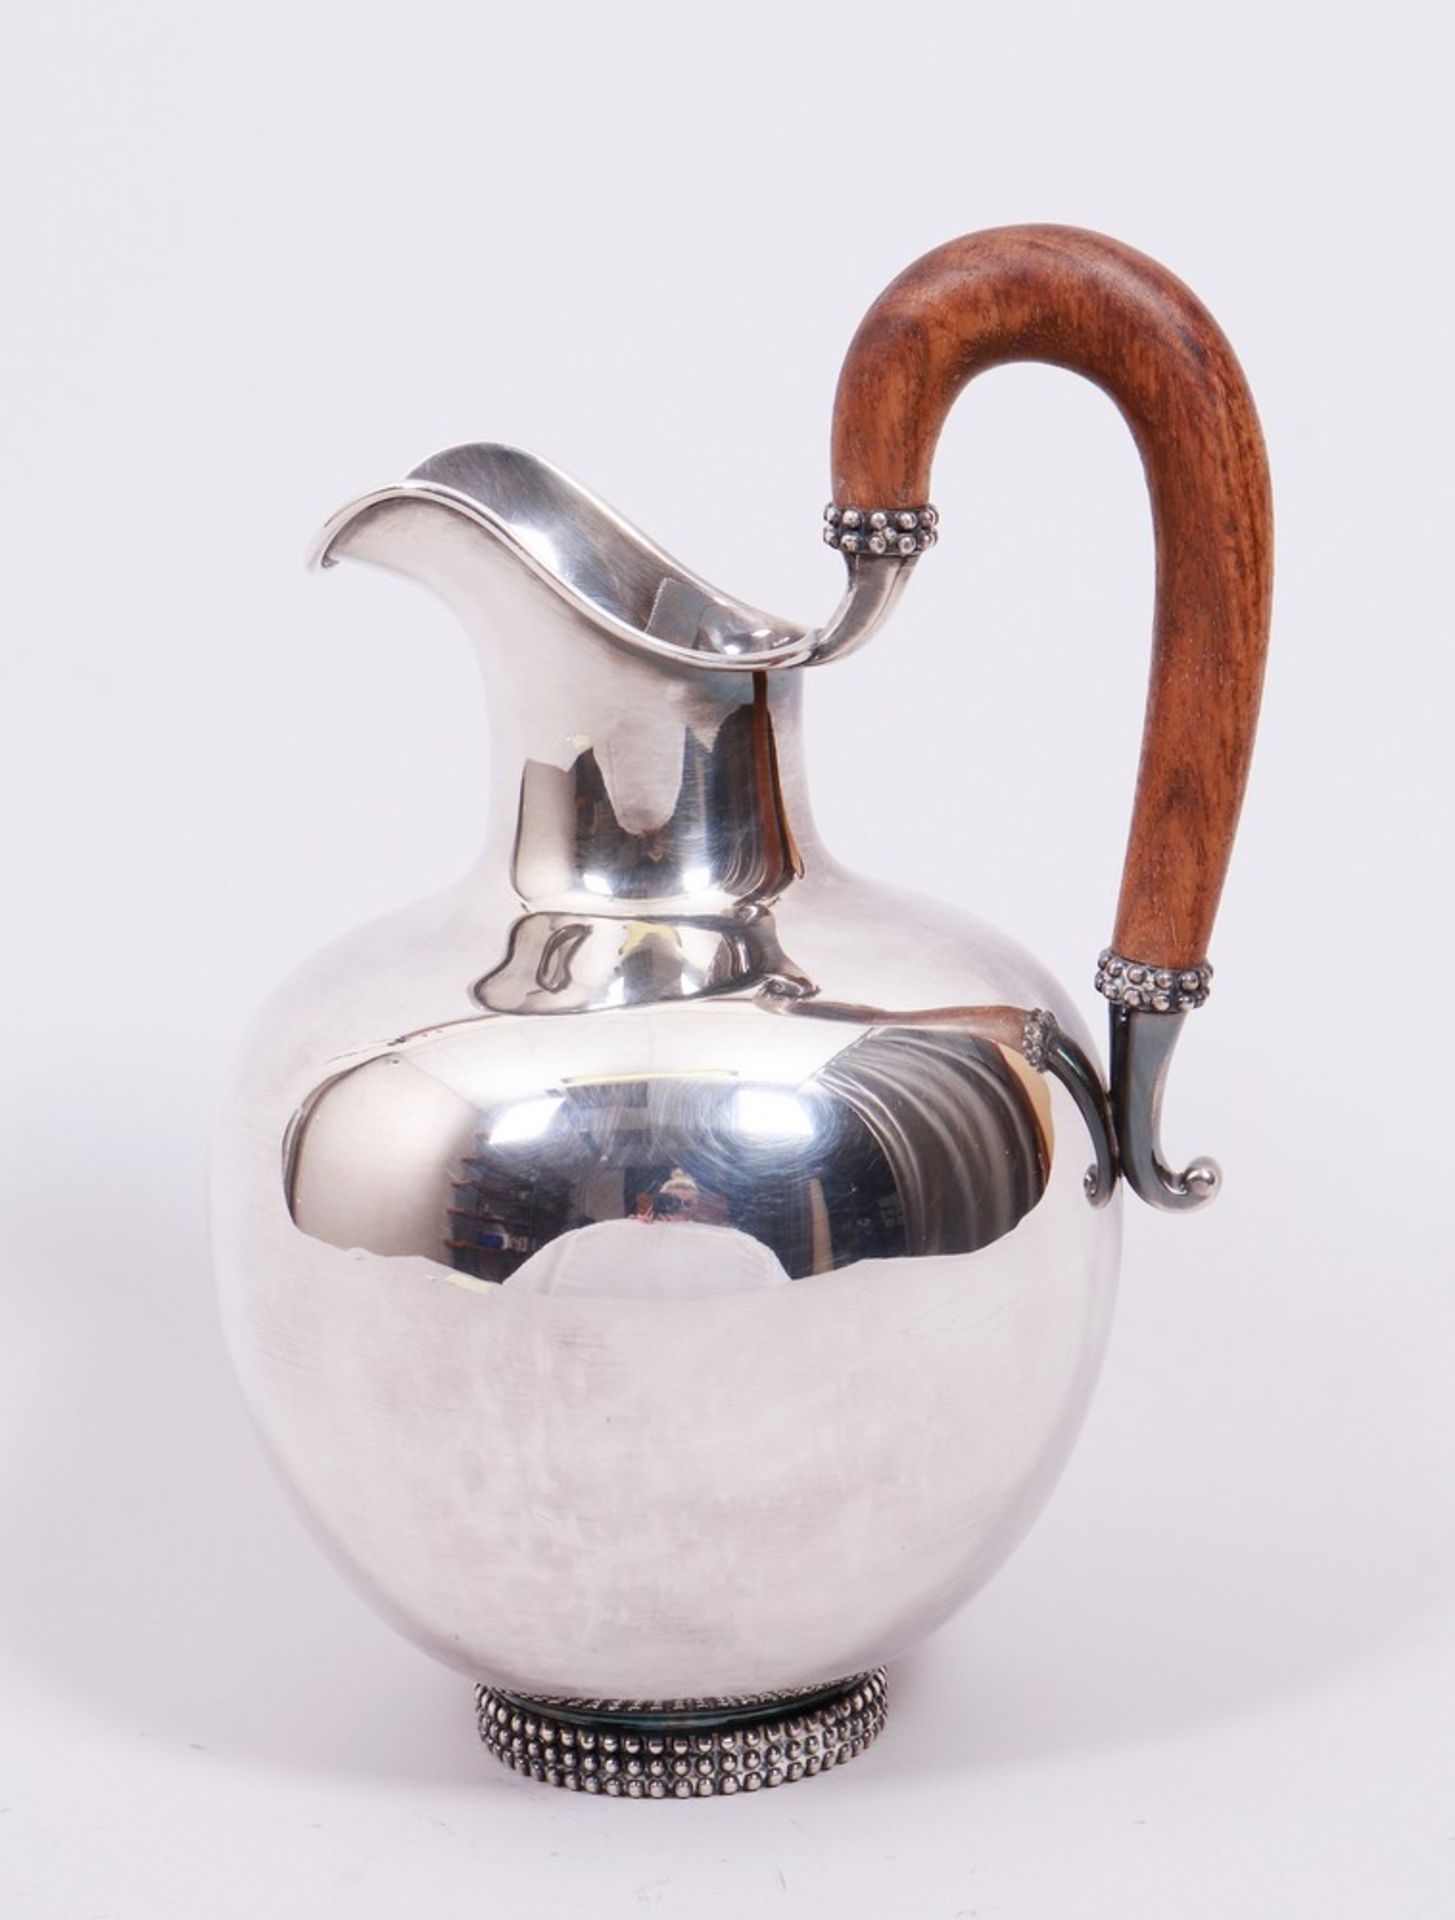 Water jug, 925 silver, Gebr. Deyhle, Schwäbisch Gmünd, 1950s - Image 3 of 4